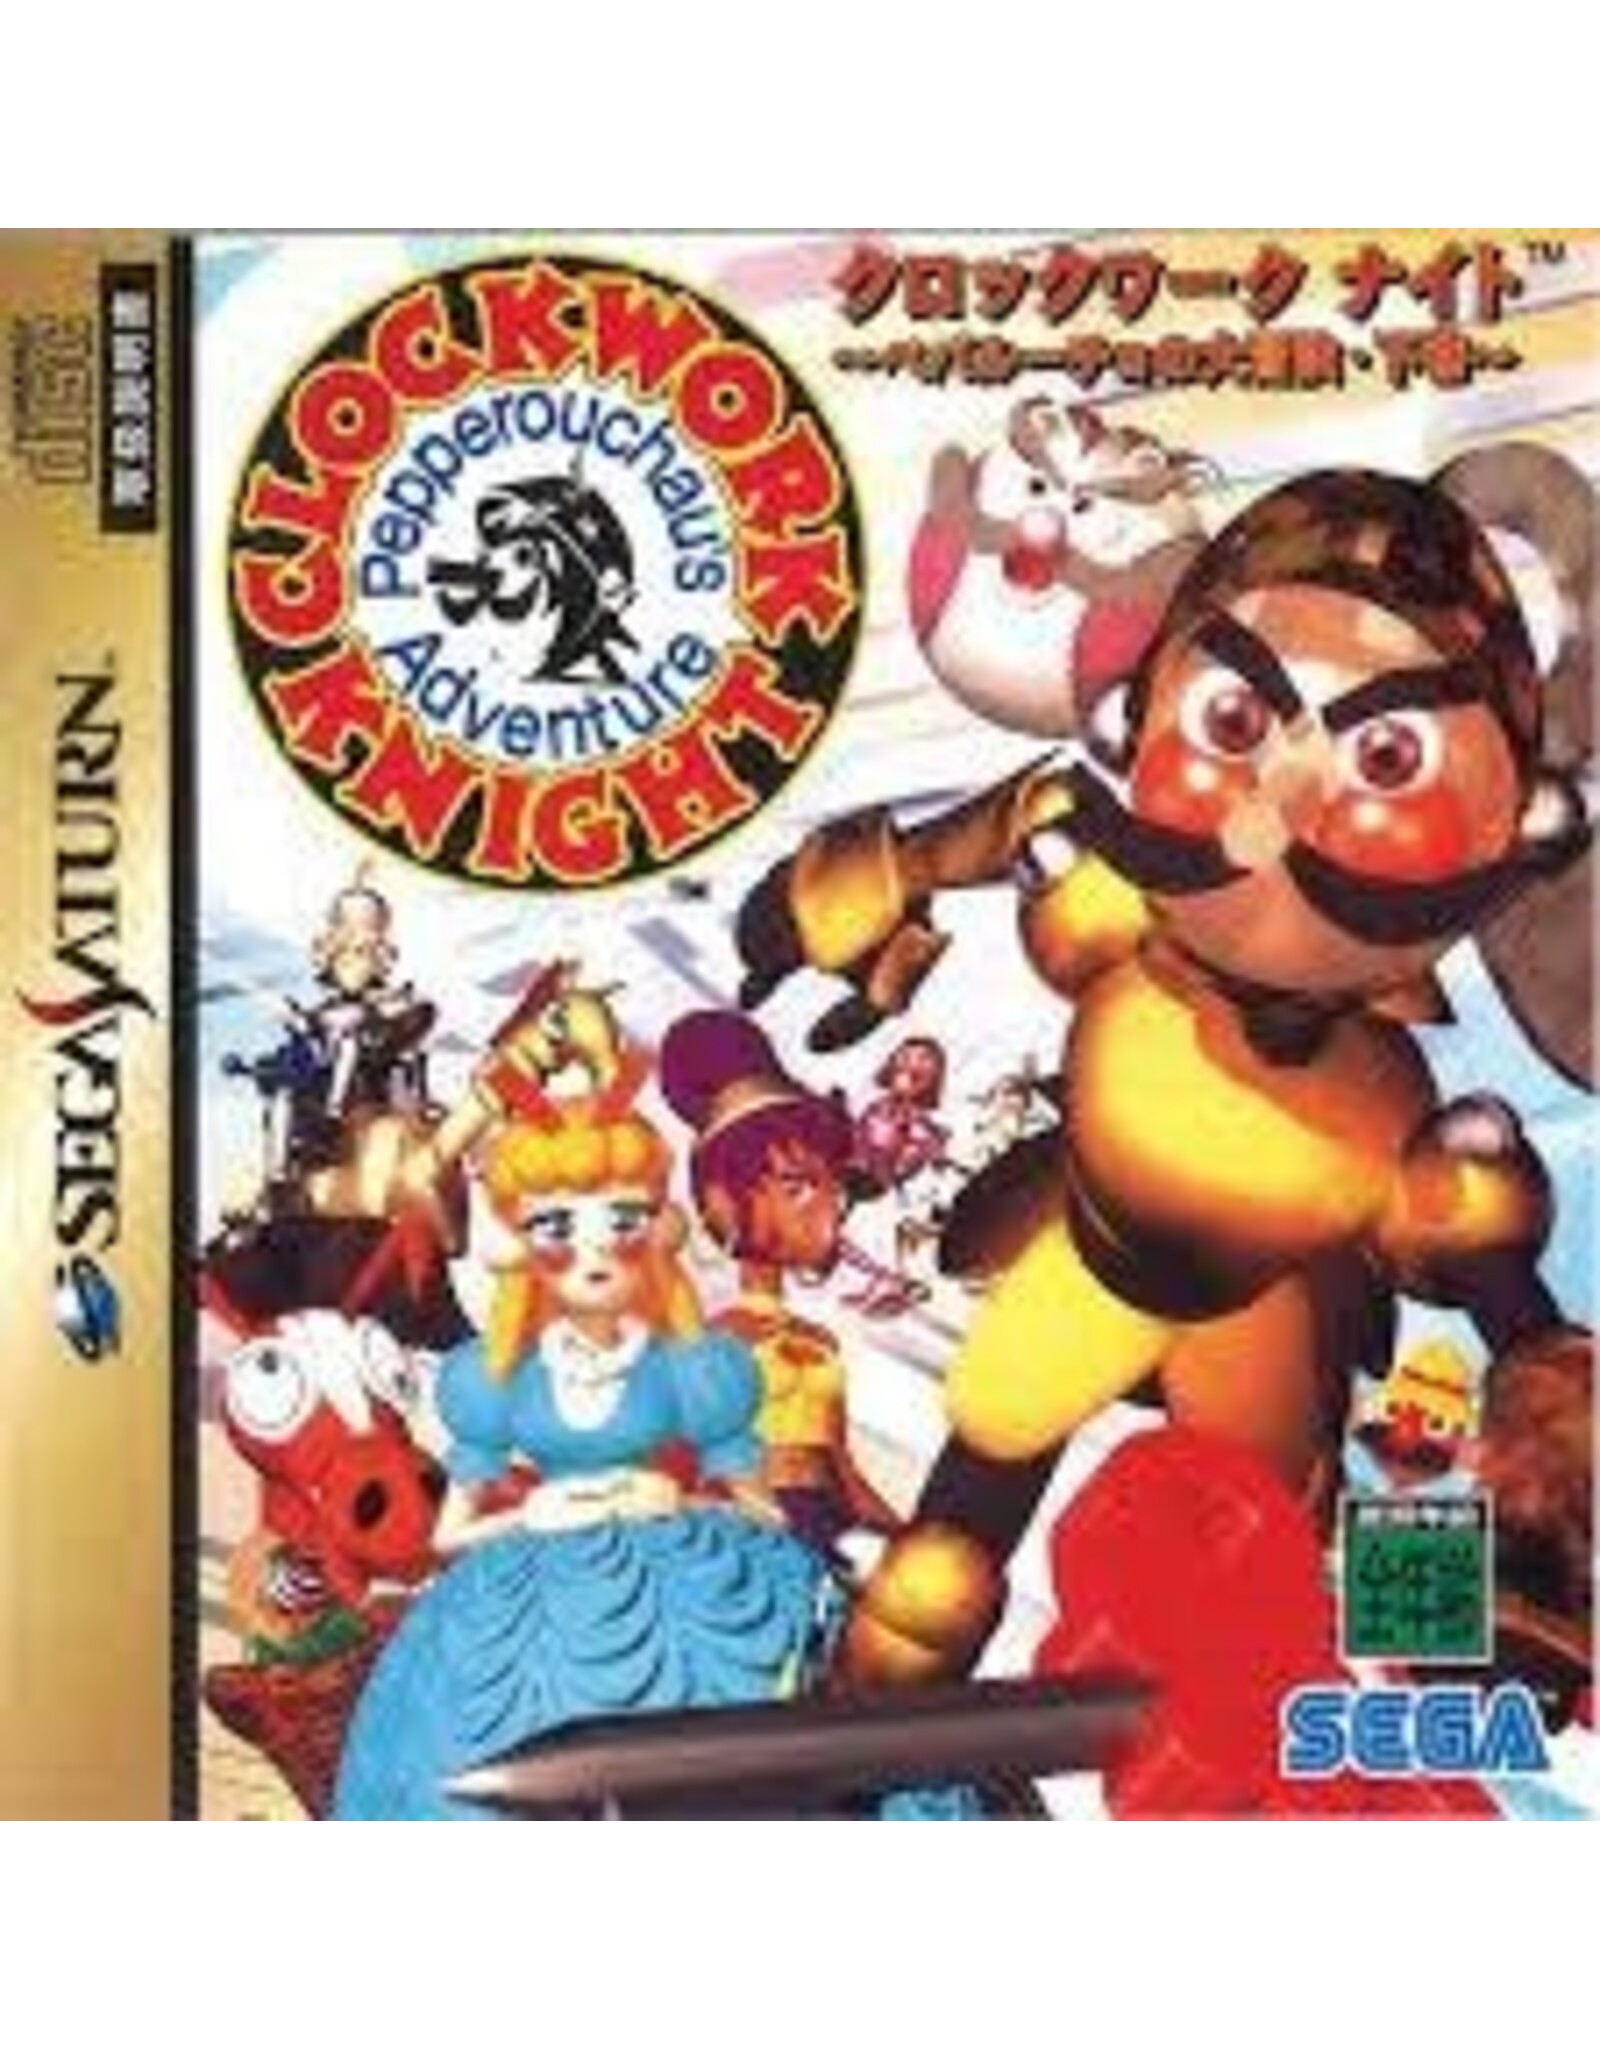 Sega Saturn Clockwork Knight 2: Pepperouchau's Adventure - JP Import (Used)